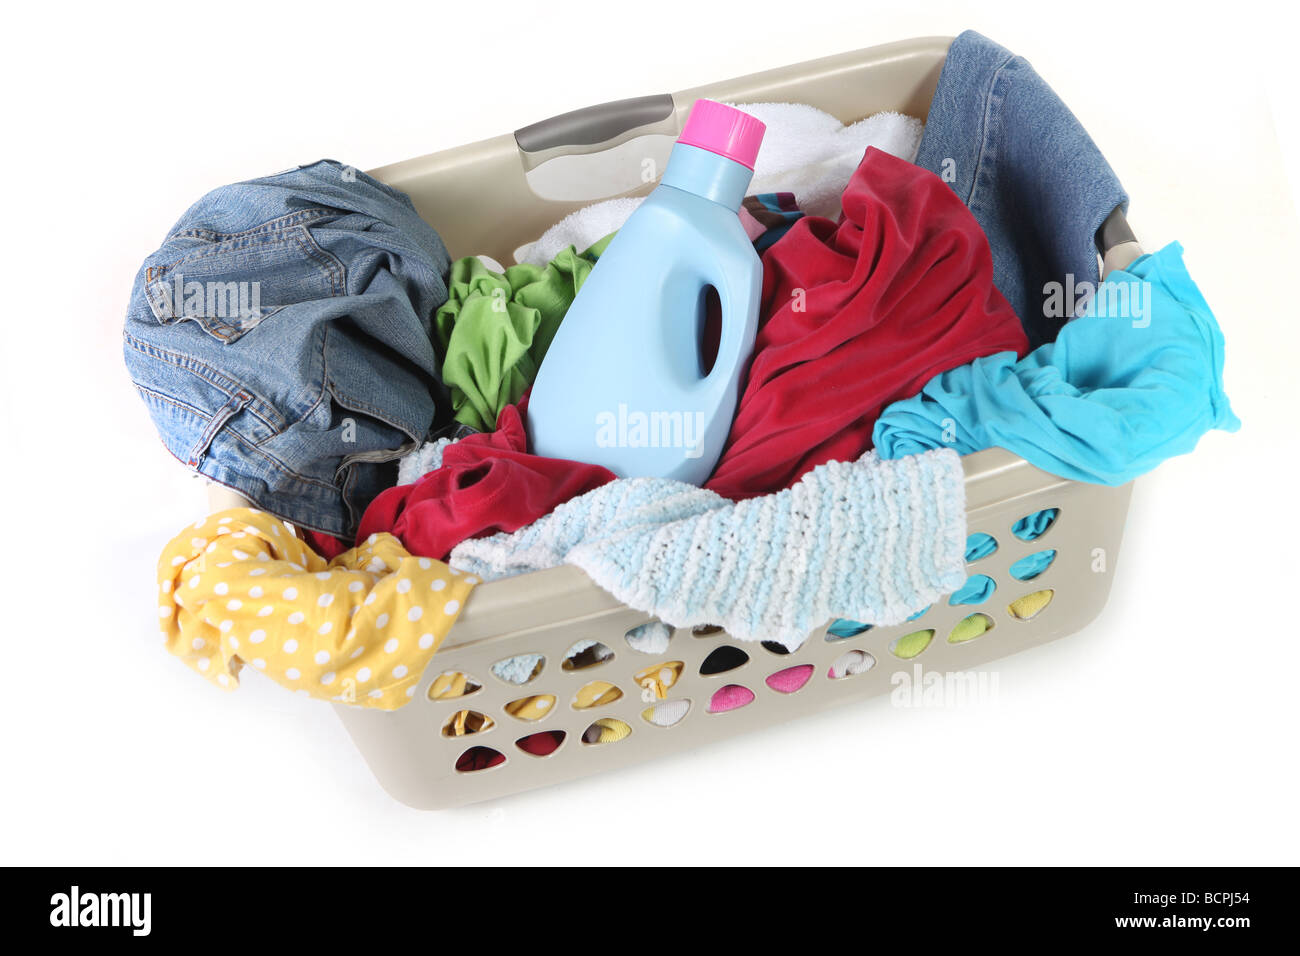 Wäschekorb mit Kleidung und Waschmittel fertig gewaschen werden Stockfoto